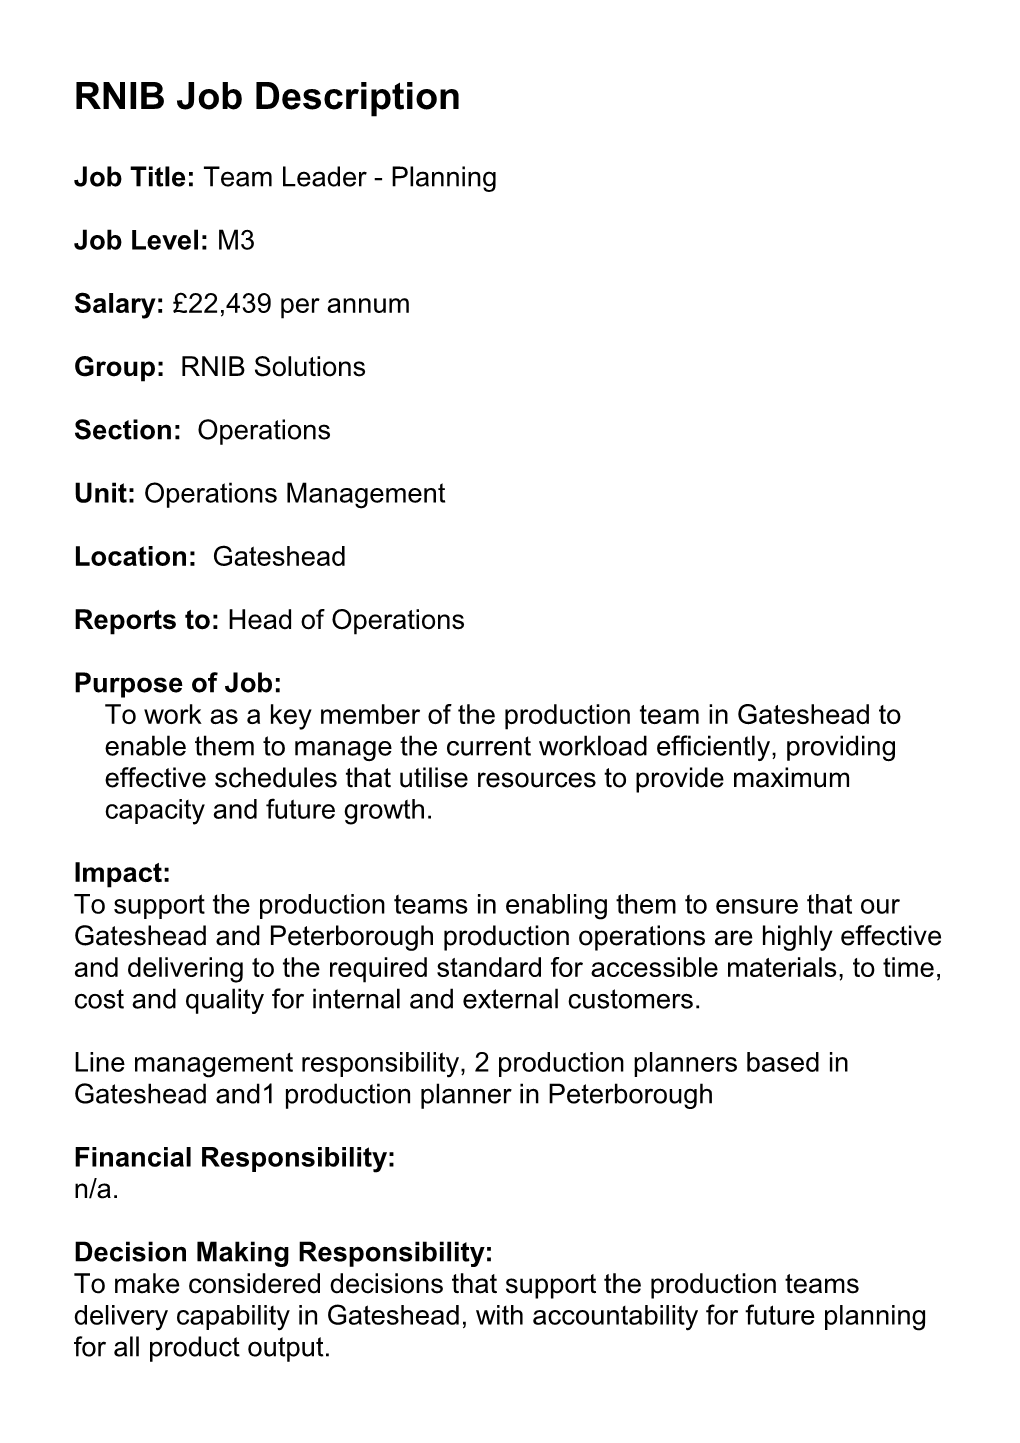 RNIB Job Description - Template